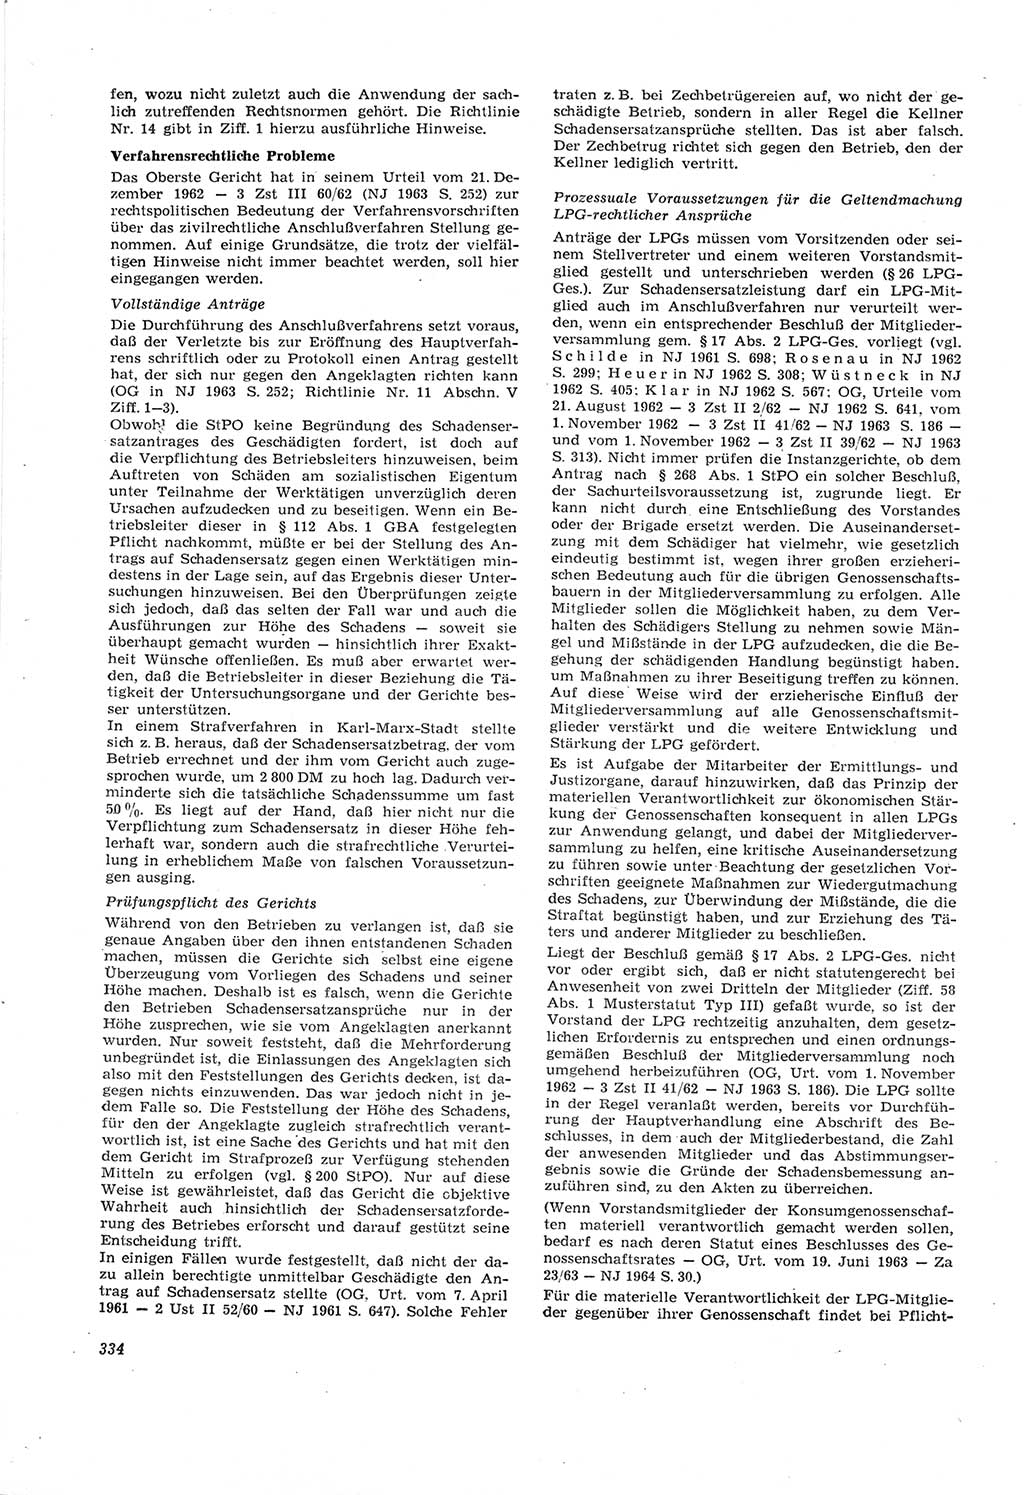 Neue Justiz (NJ), Zeitschrift für Recht und Rechtswissenschaft [Deutsche Demokratische Republik (DDR)], 18. Jahrgang 1964, Seite 334 (NJ DDR 1964, S. 334)